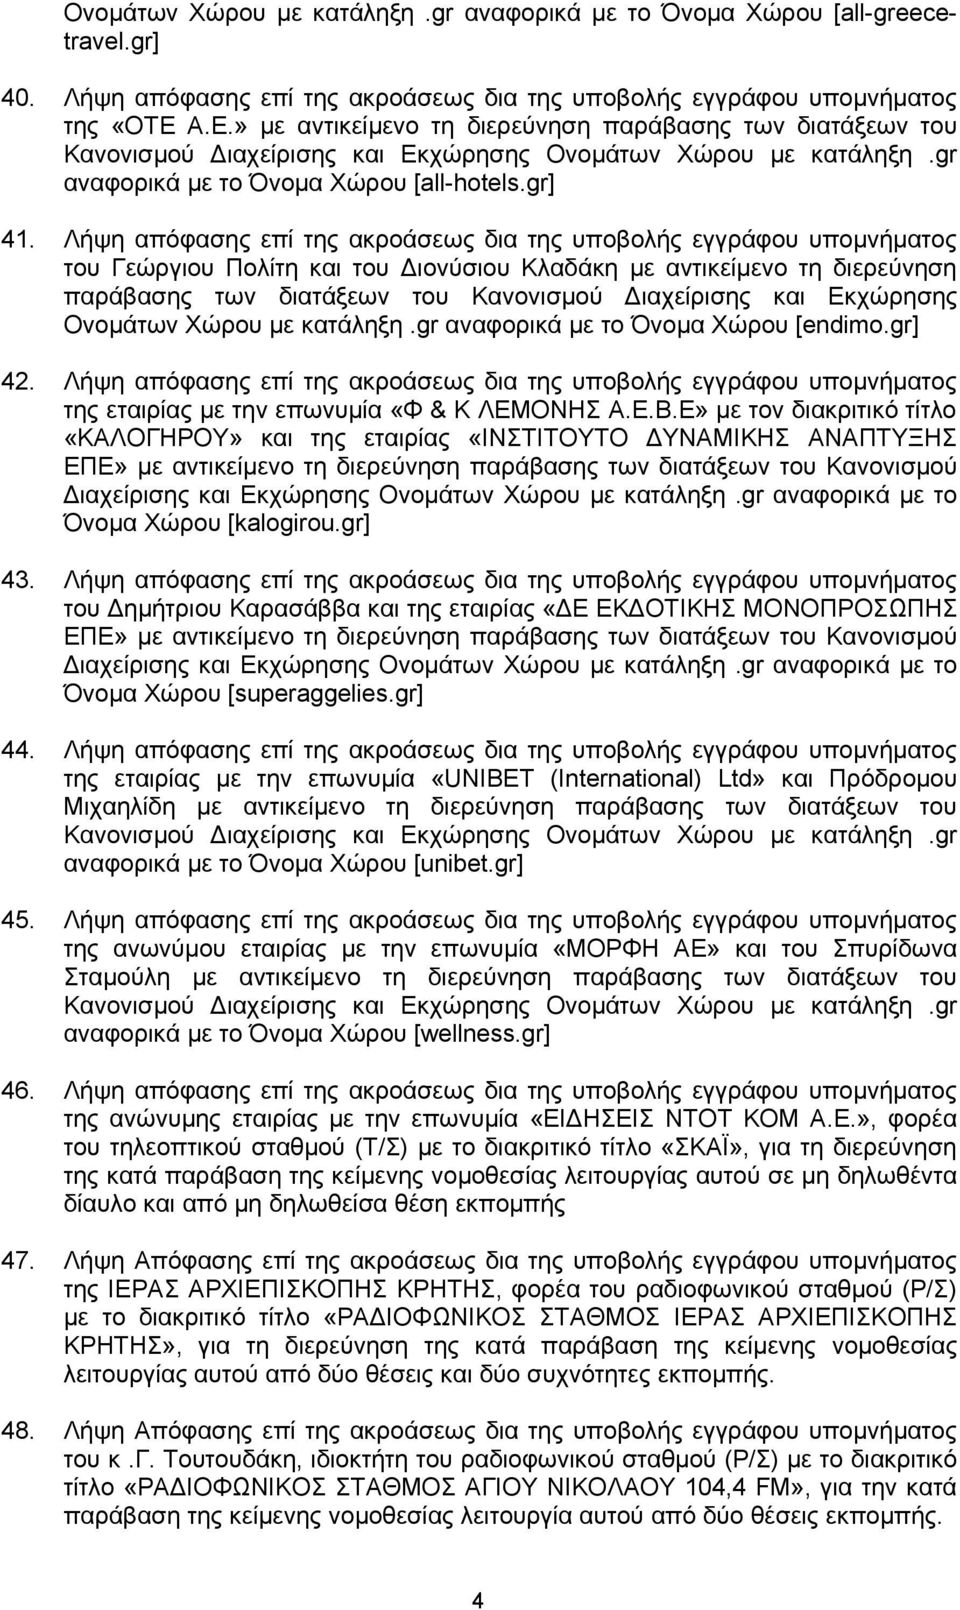 Λήψη απόφασης επί της ακροάσεως δια της υποβολής εγγράφου υπομνήματος του Γεώργιου Πολίτη και του Διονύσιου Κλαδάκη με αντικείμενο τη διερεύνηση παράβασης των διατάξεων του Κανονισμού Διαχείρισης και